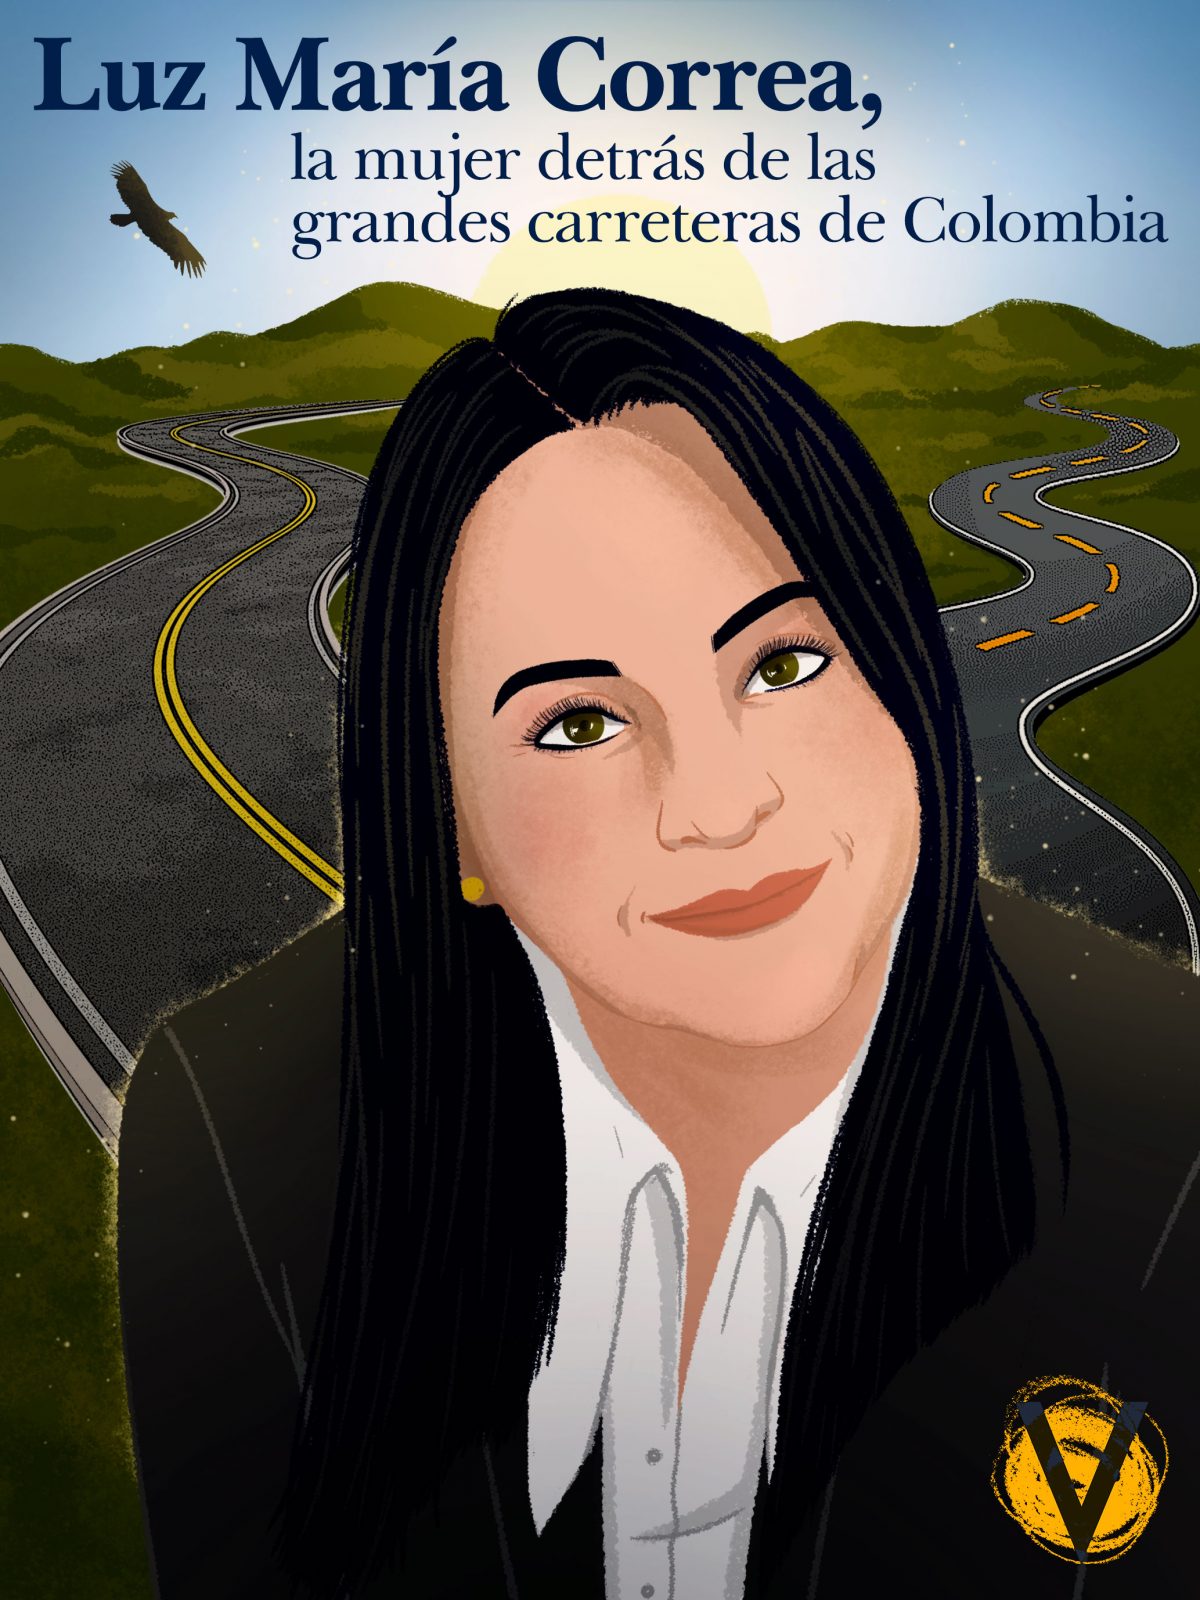 Luz Maria Correa